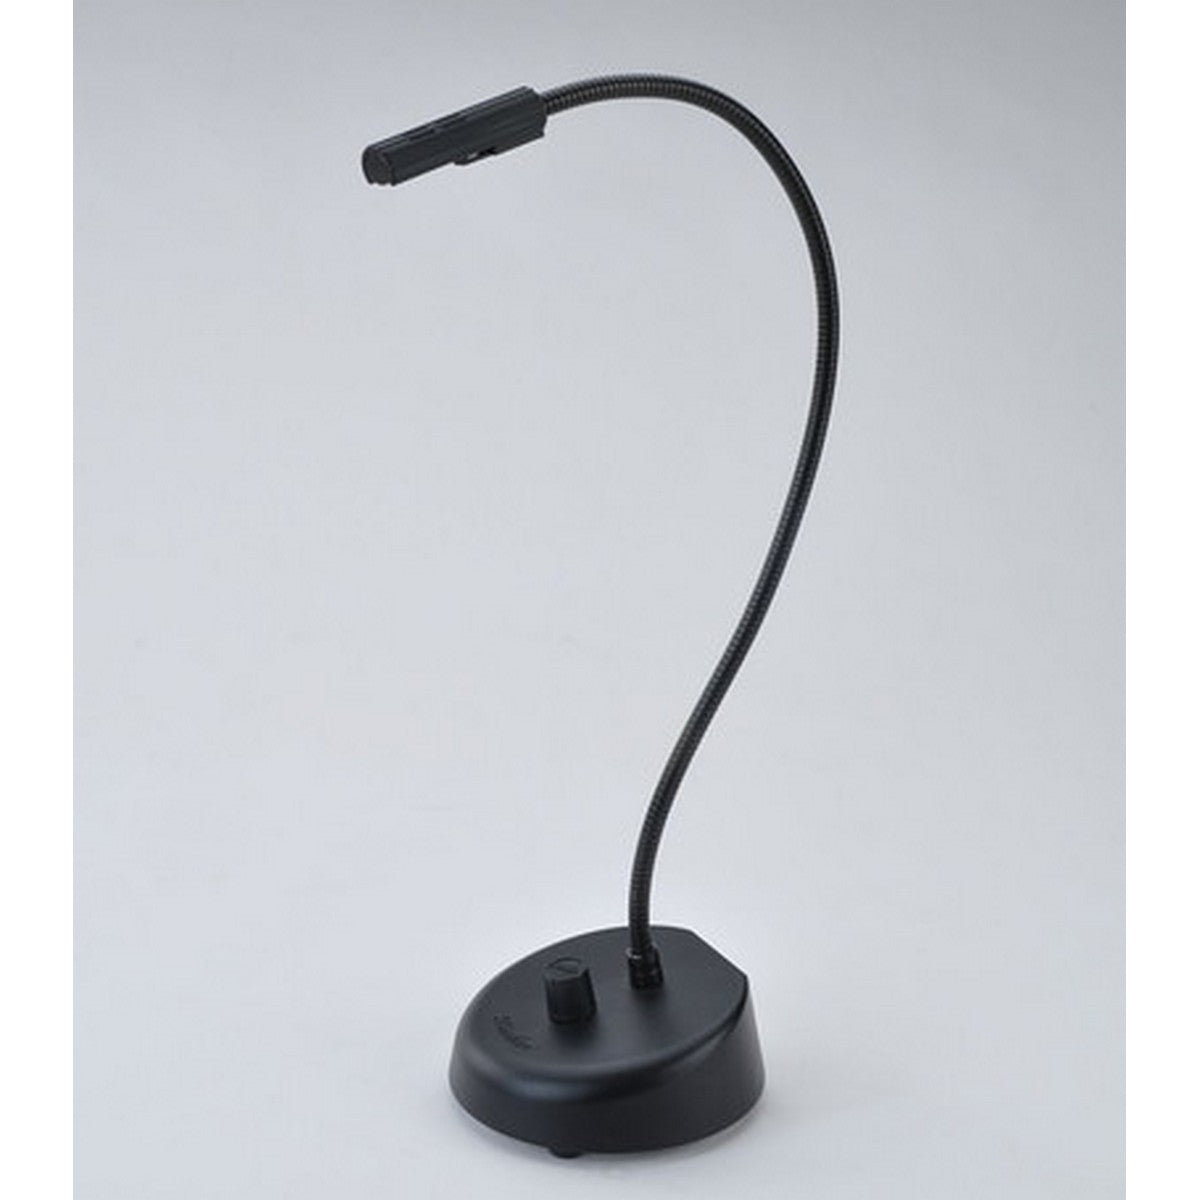 Littlite LW-18-LED | LED Desk Light with Dimmer 18 inch  Gooseneck